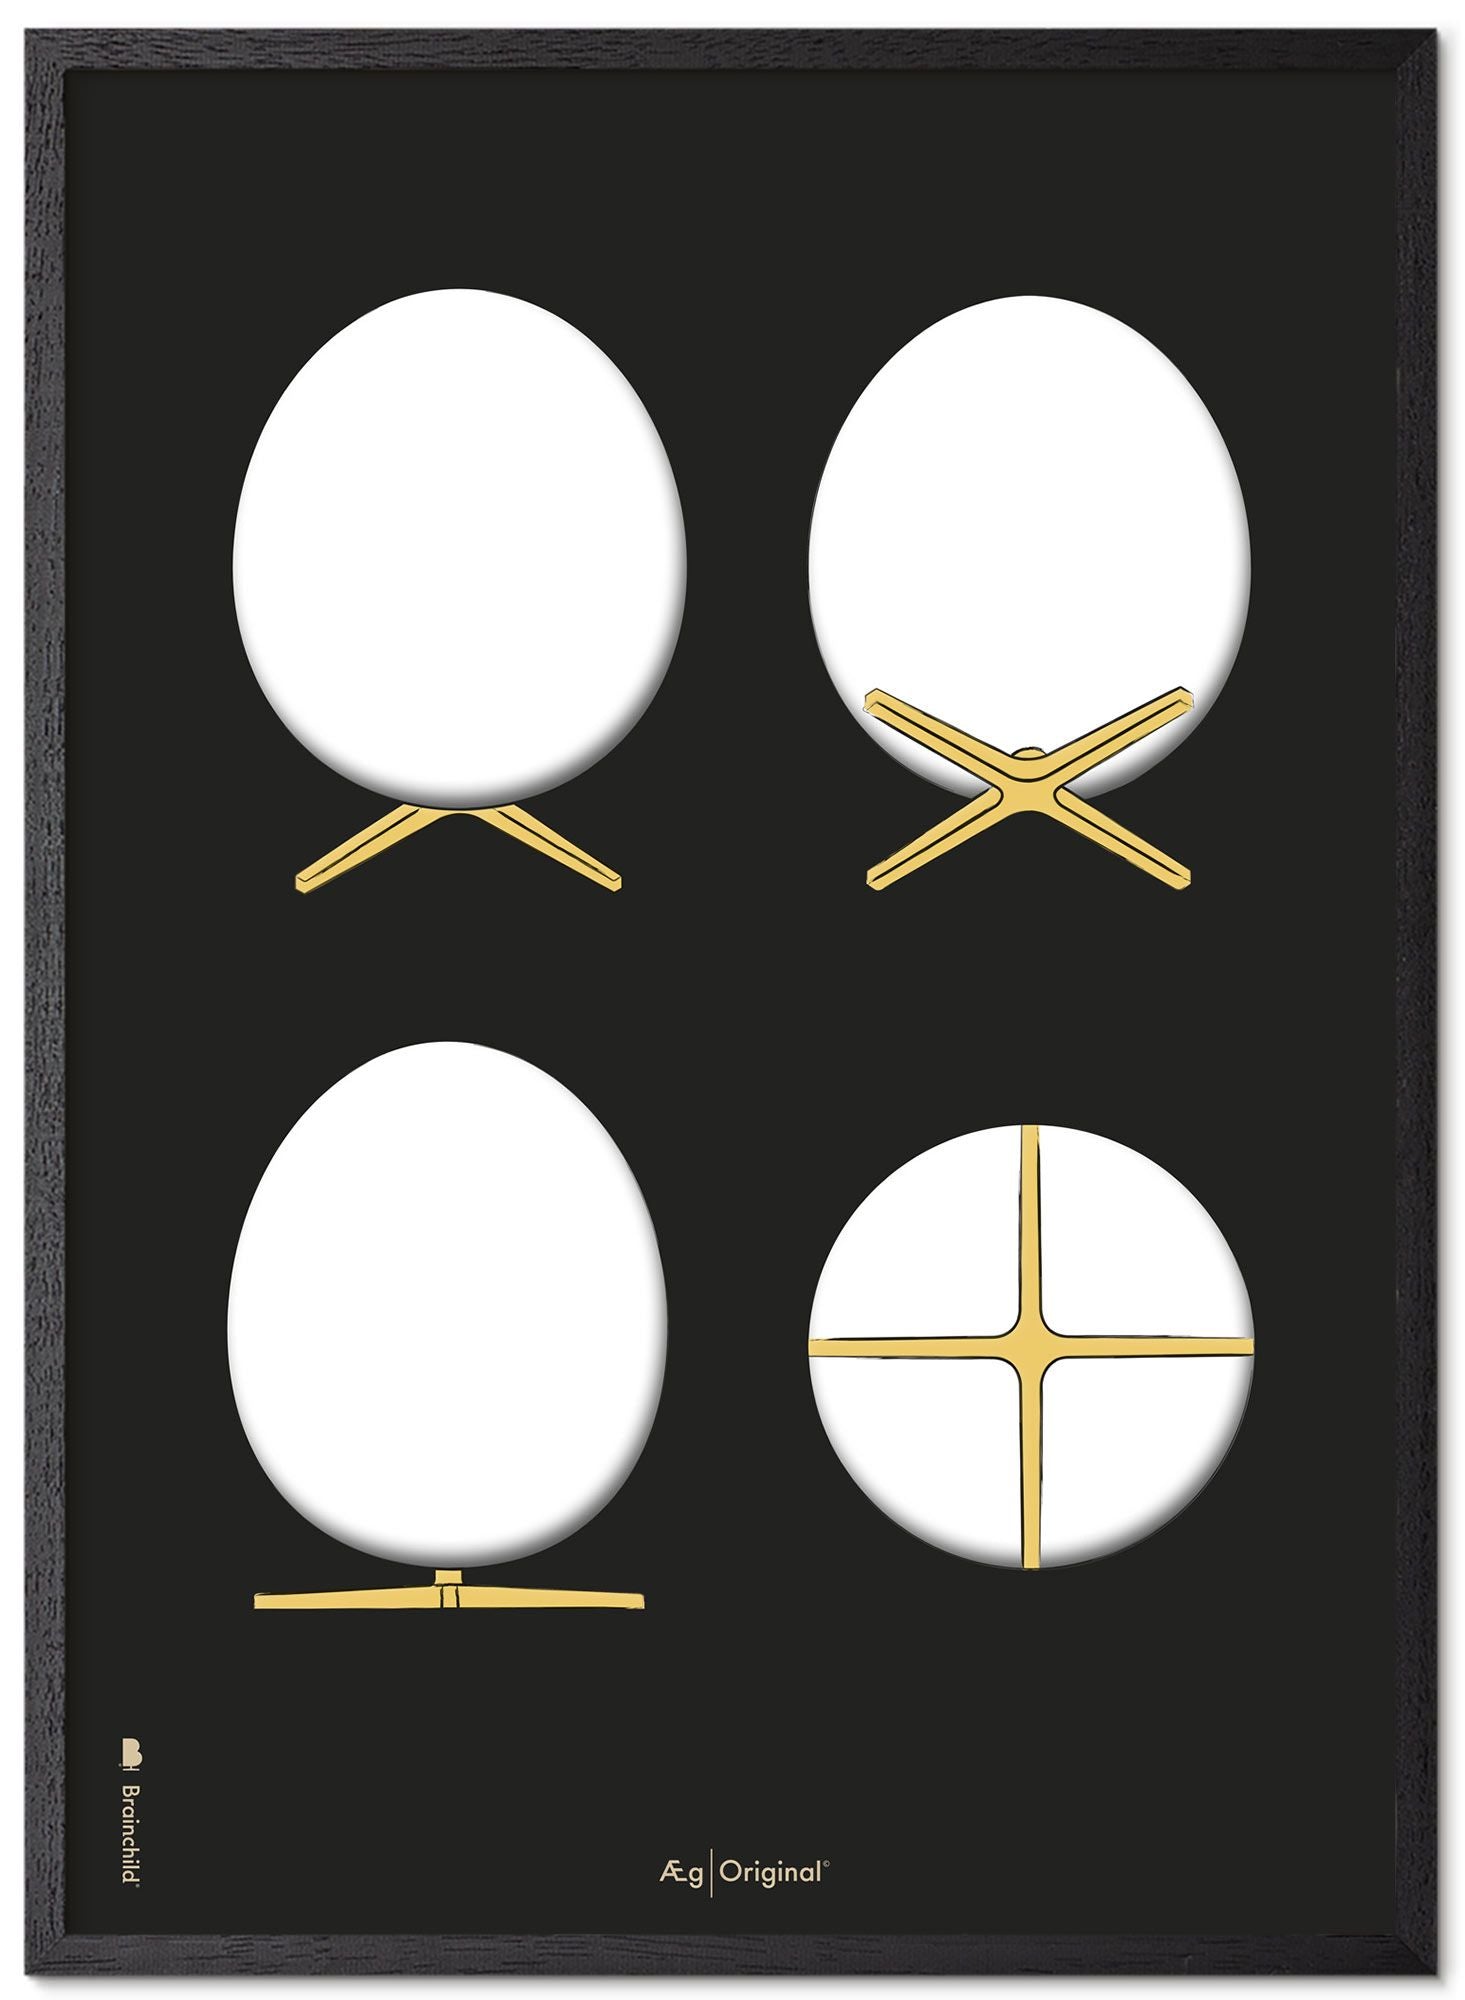 Prepare el marco de póster de bocetos de diseño de huevo hecho de madera lacada negra 50x70 cm, fondo negro